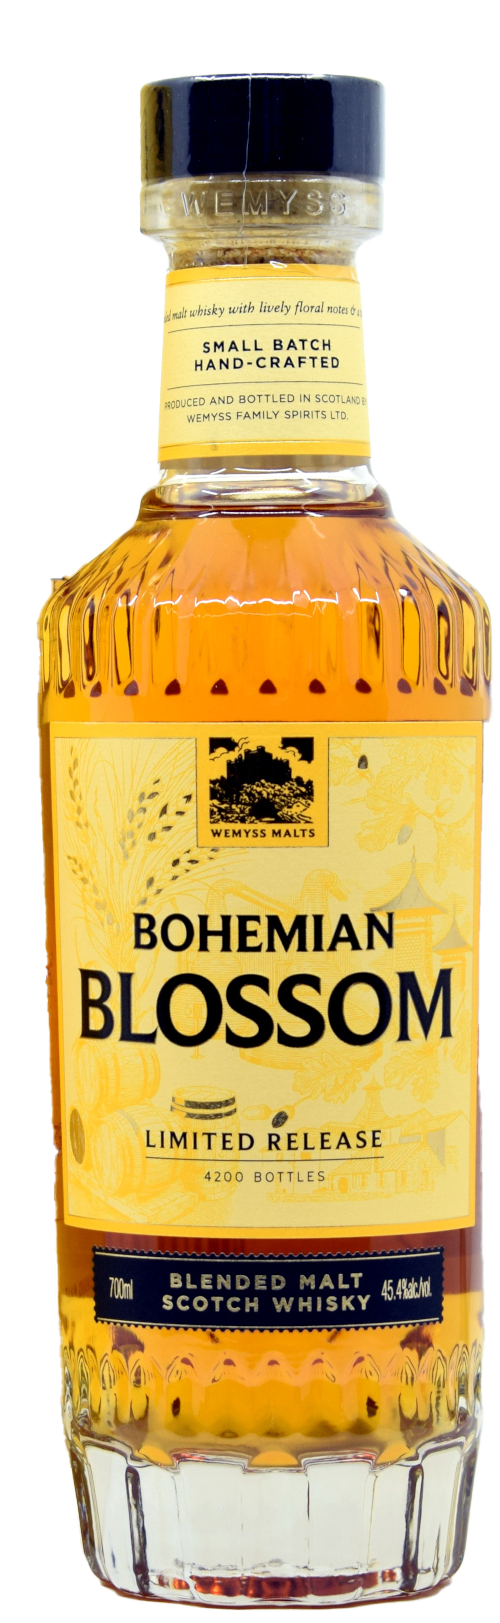 Bohemian Blossom